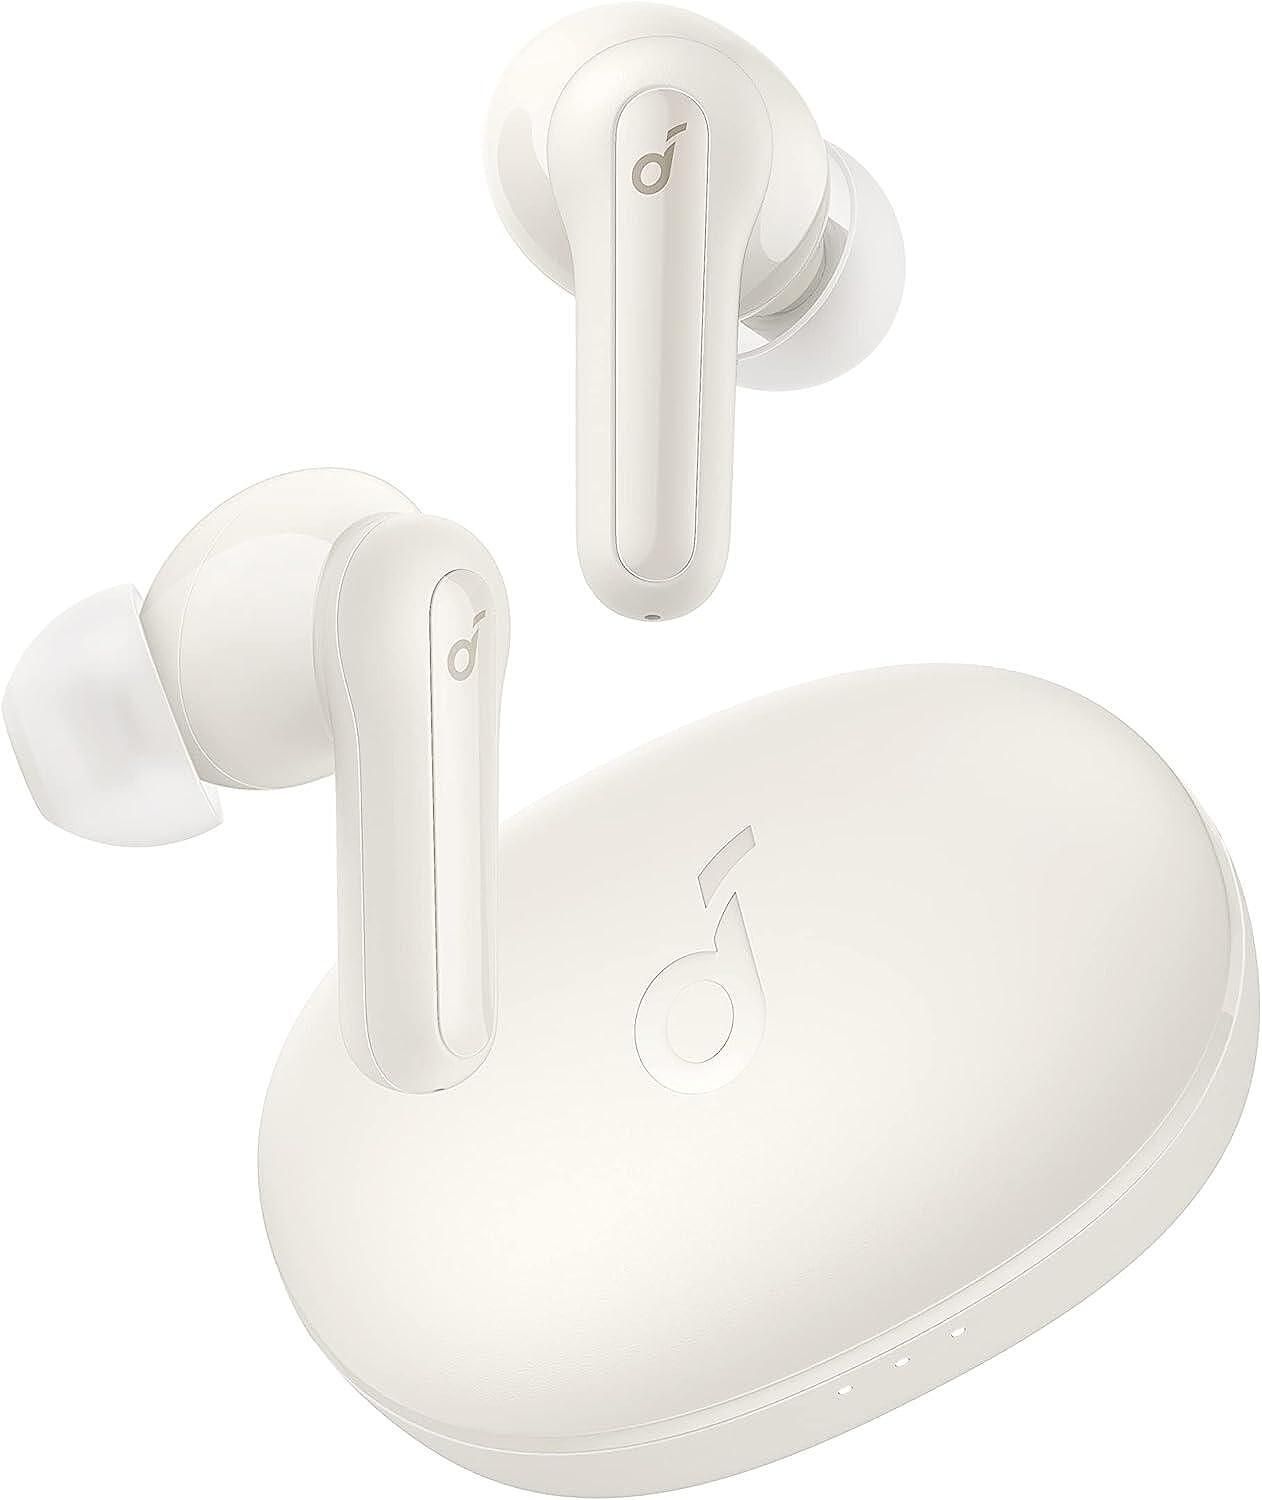 Anker Soundcore Life P2 Mini TWS  - безжични слушалки Bluetooth 5.2